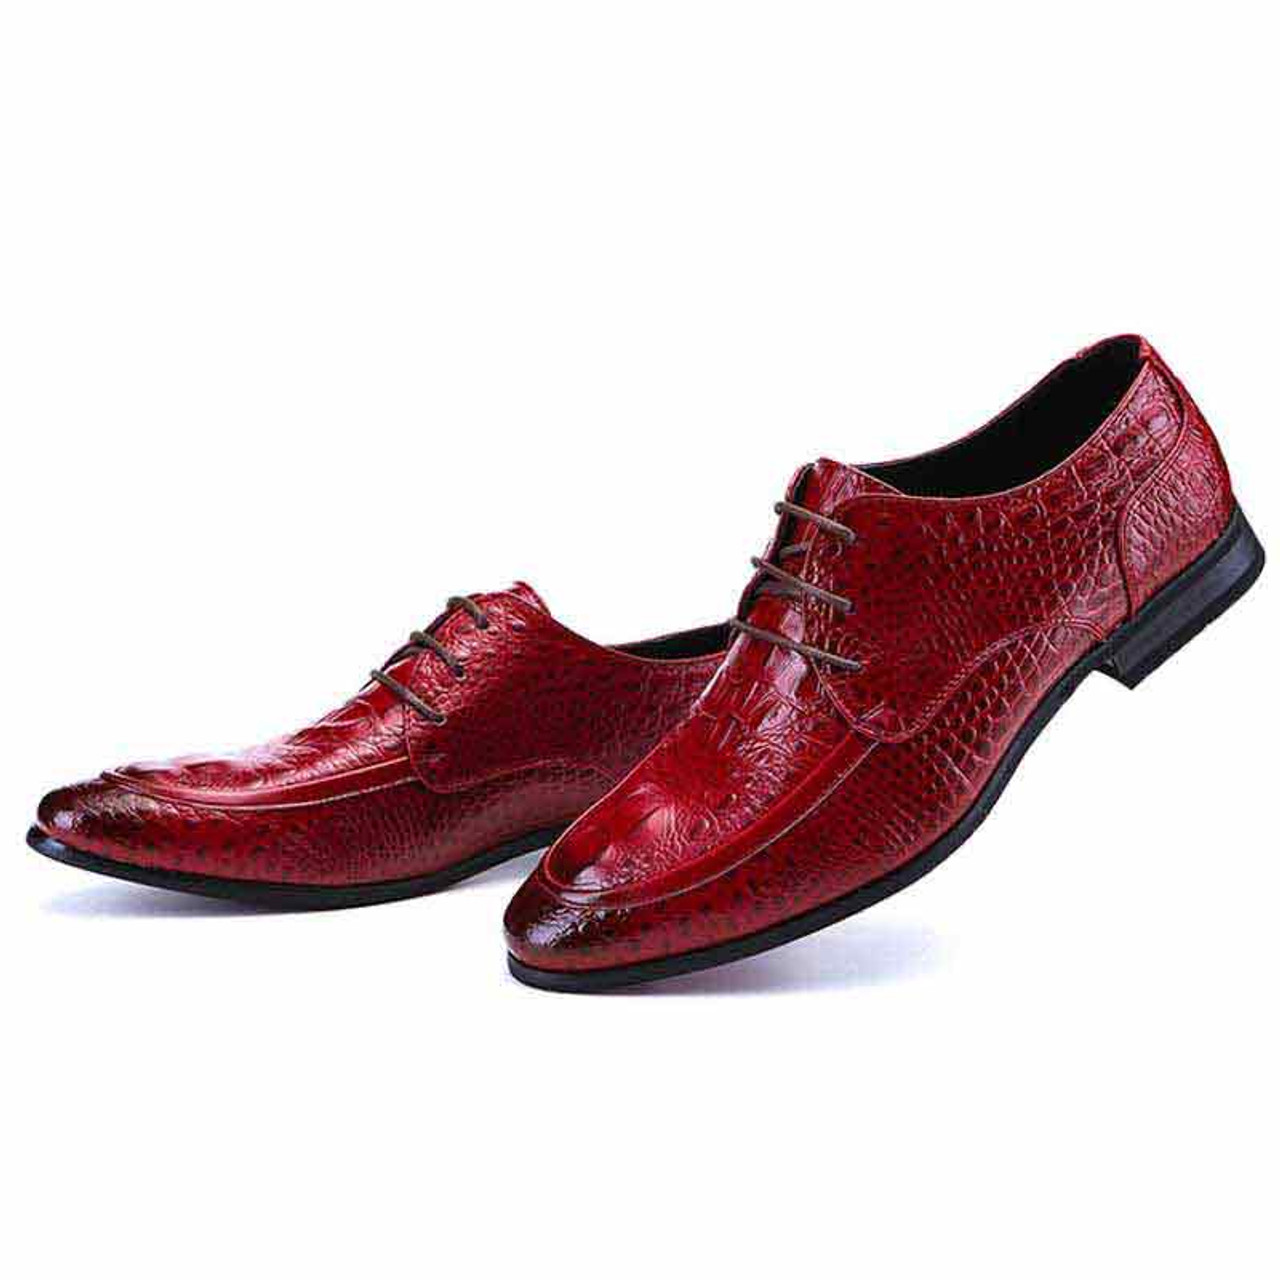 Red crocodile skin pattern derby dress shoe | Mens dress shoes online ...